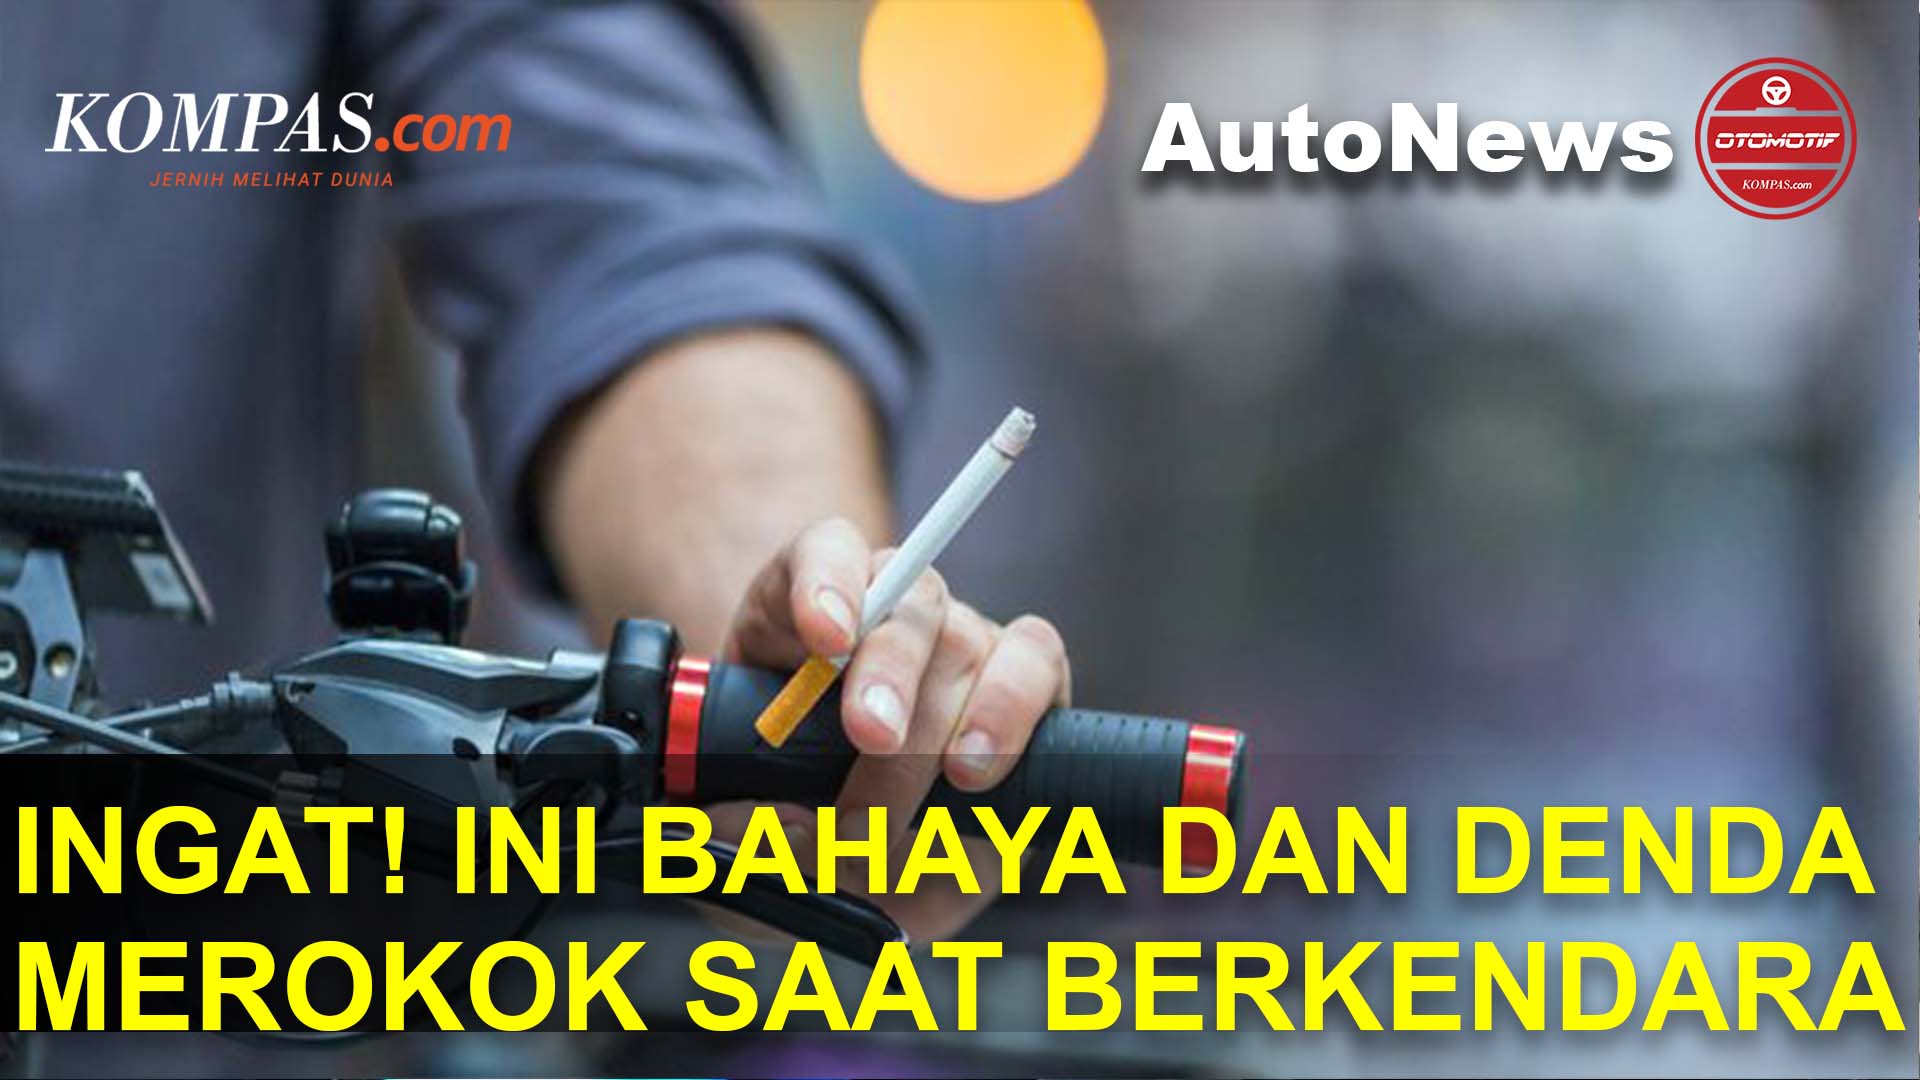 Selain Berbahaya, Merokok Saat Berkendara Juga Bisa Kena Denda